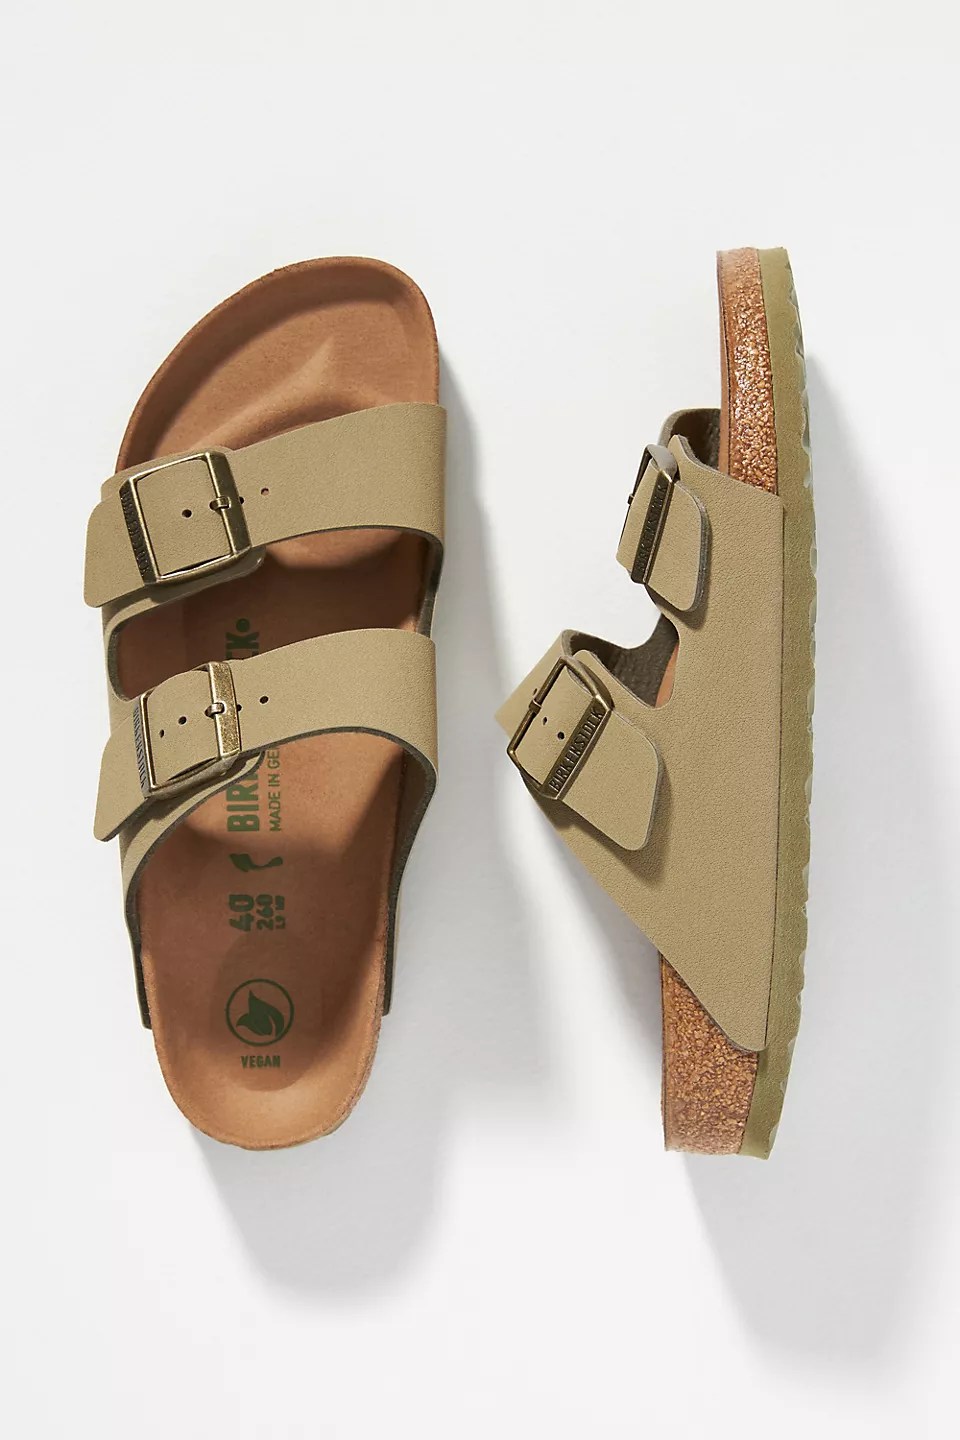 birkenstock arizona sandals in khaki